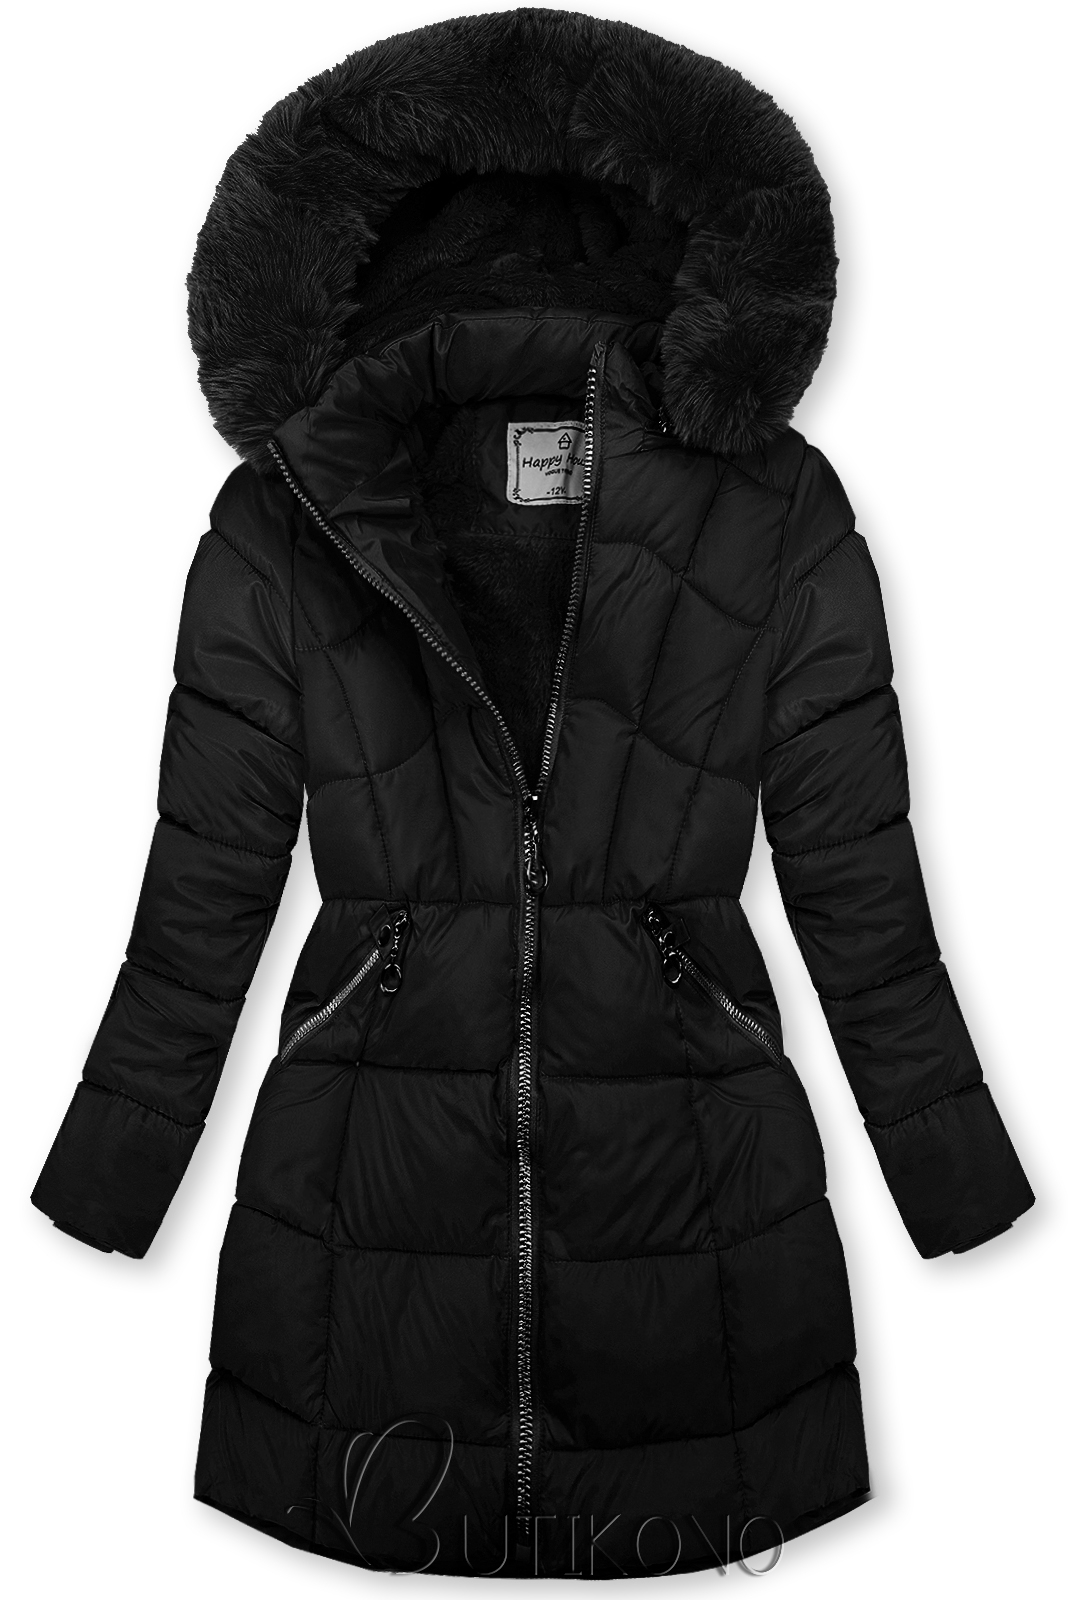 Čierna zimná bunda s rukavicami